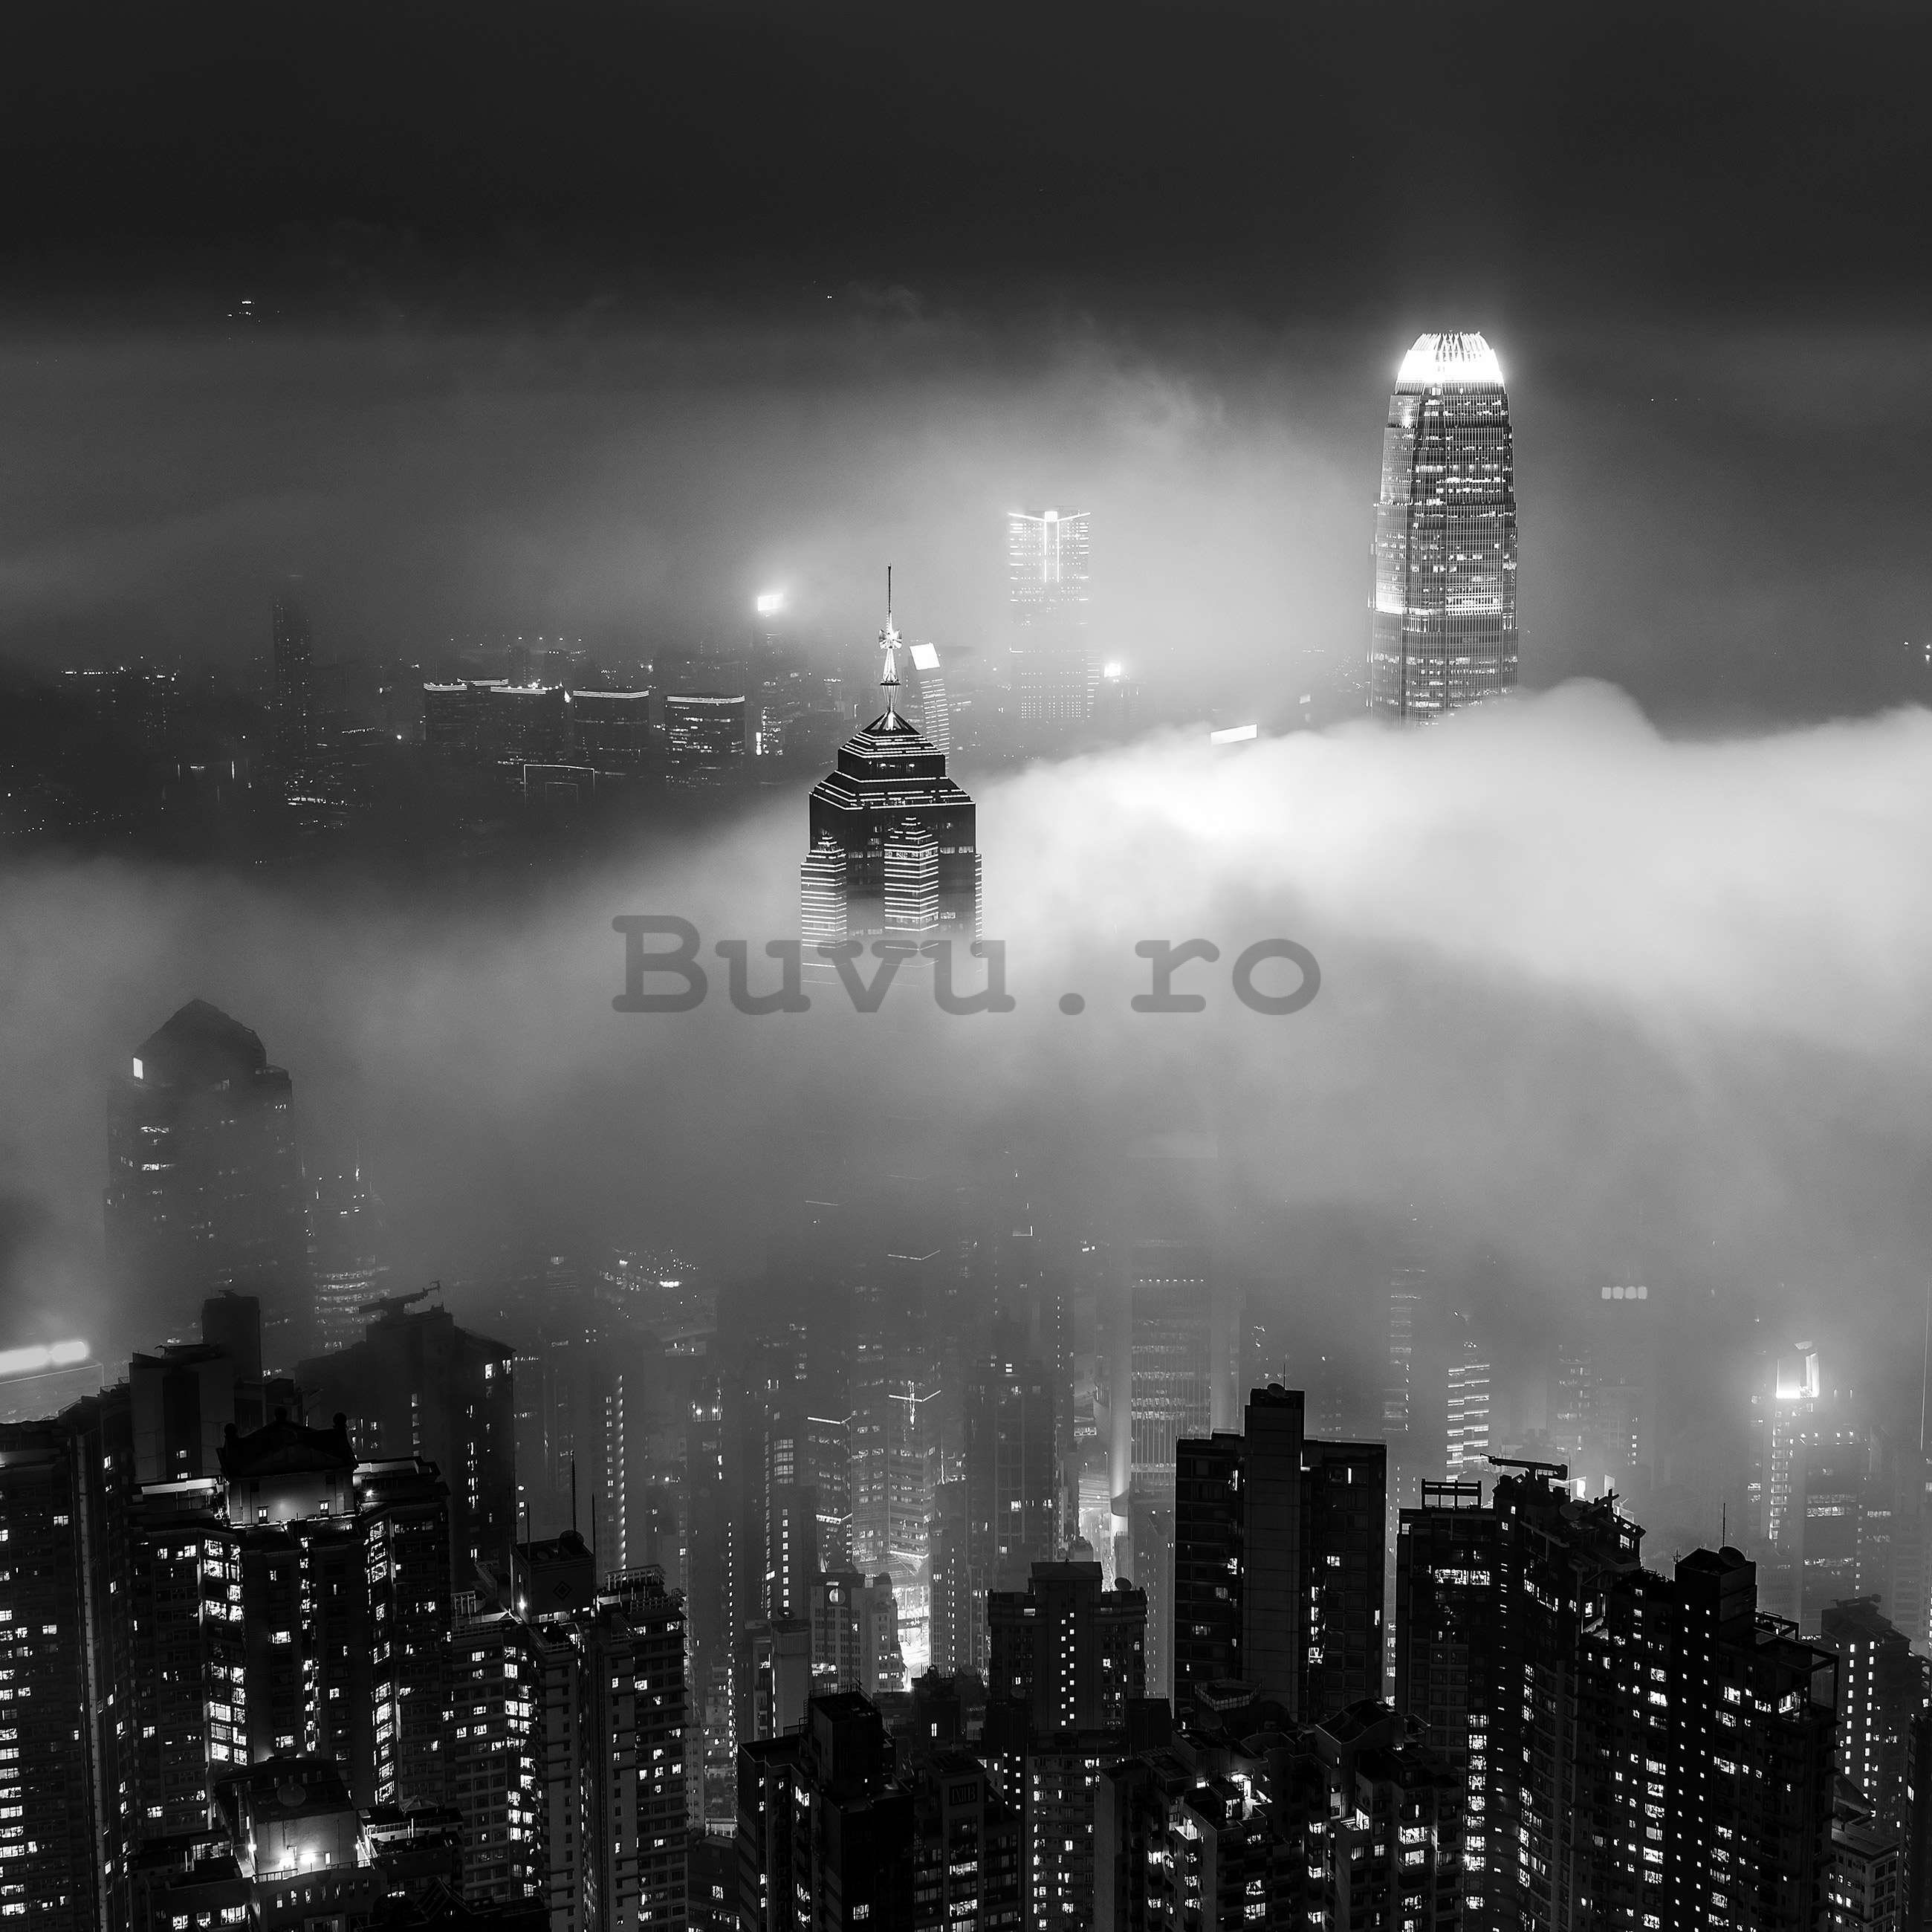 Fototapet vlies: Orașul de noapte în ceață (alb și negru) - 416x254 cm